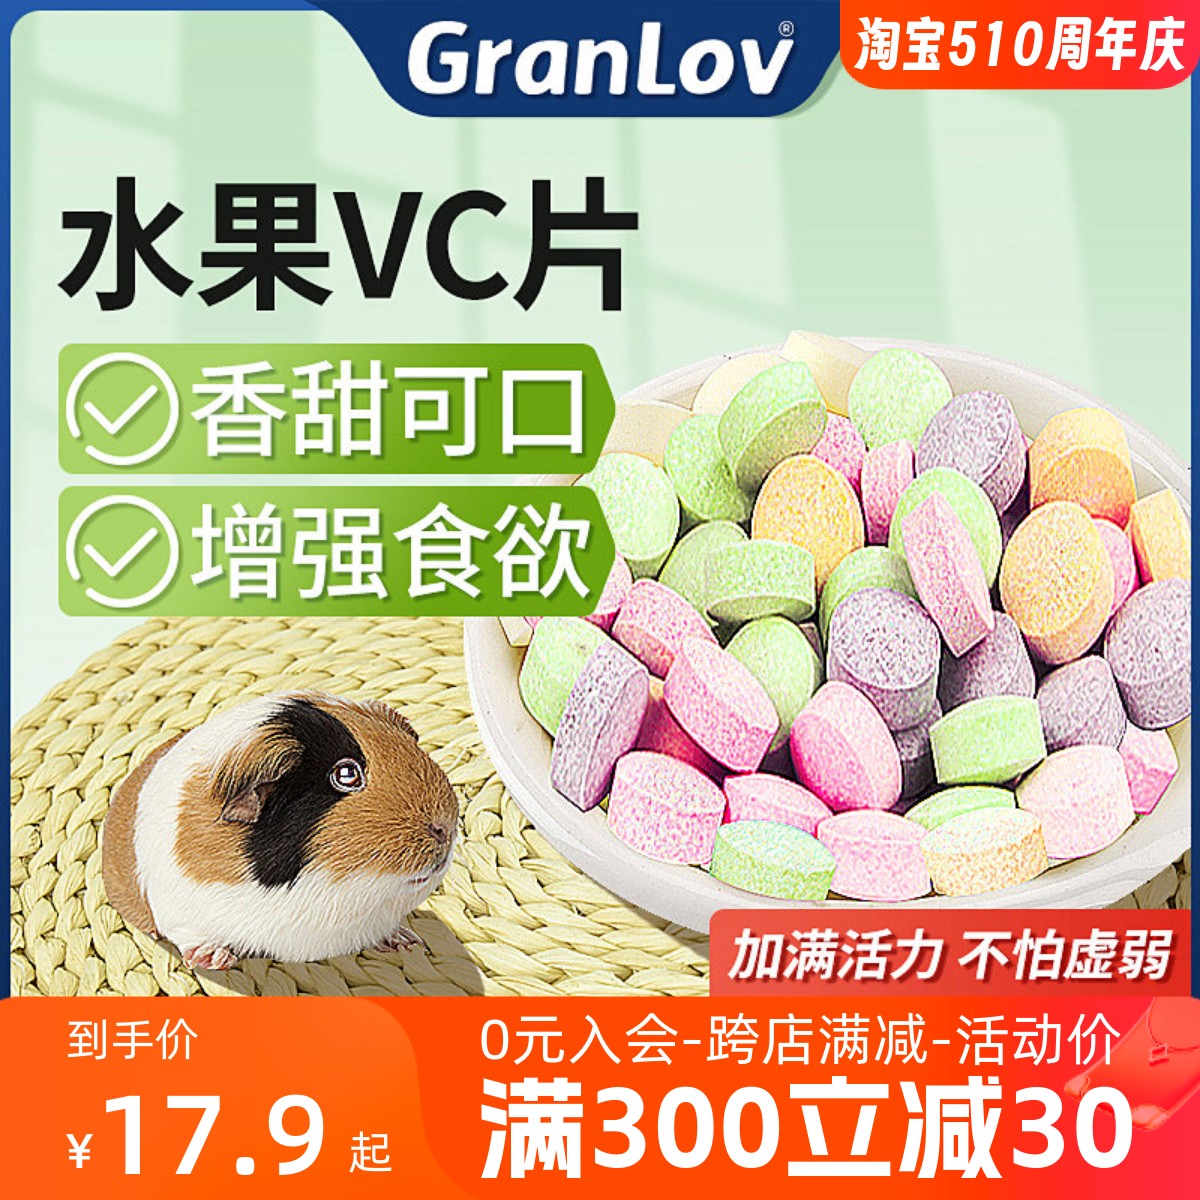 VC片丸水果口味小宠物龙猫仓豚鼠兔子50粒补充营养维生素保健食品